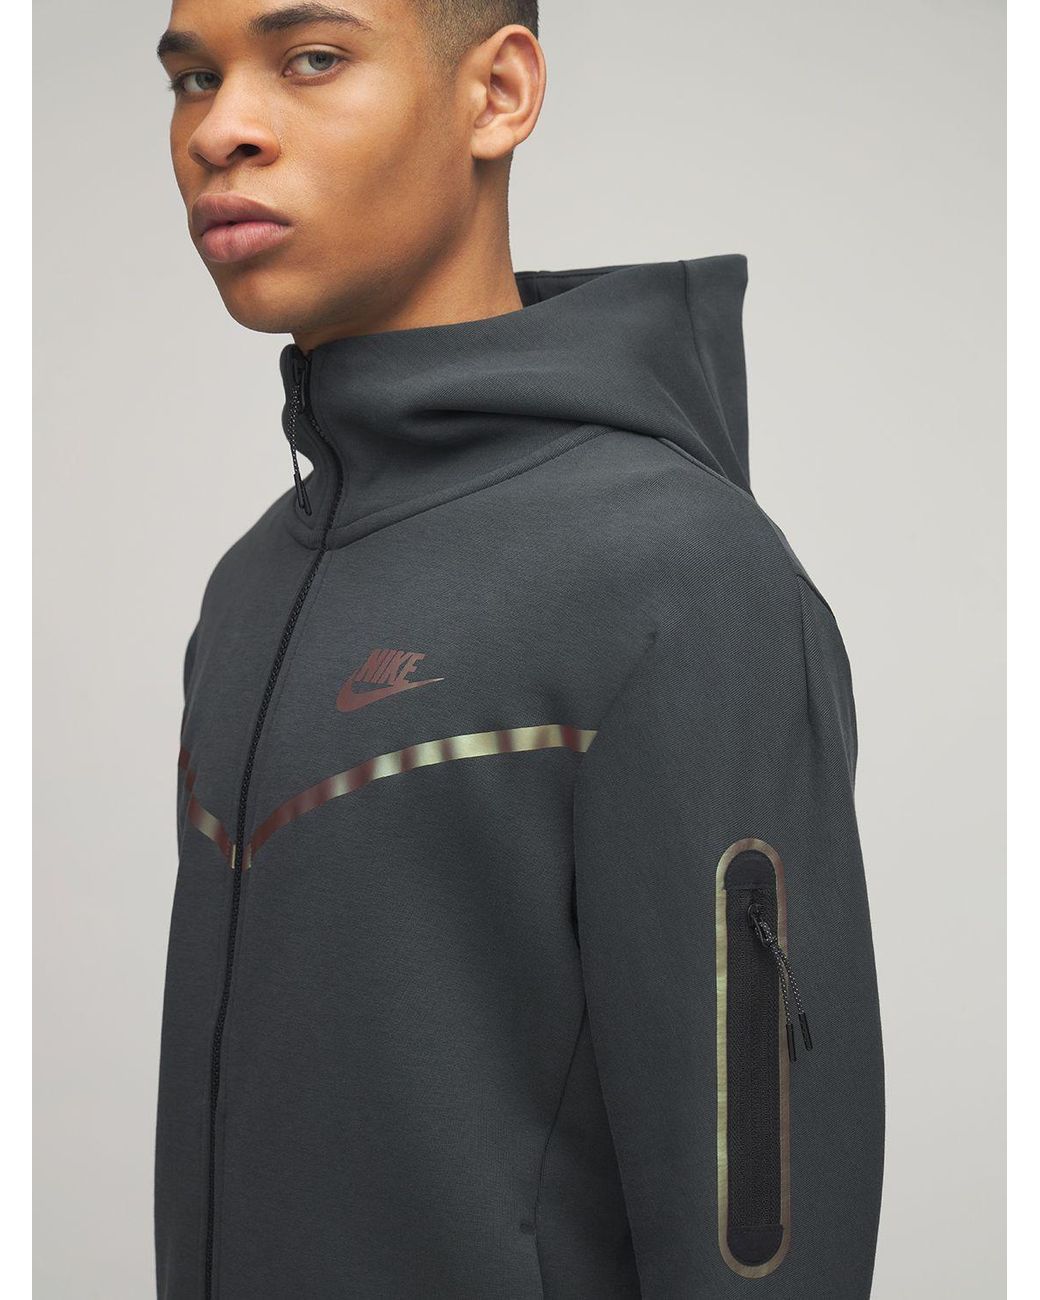 Nike Tech Fleece Iridescent Zip Up Sweatshirt in Black for Men | Lyst